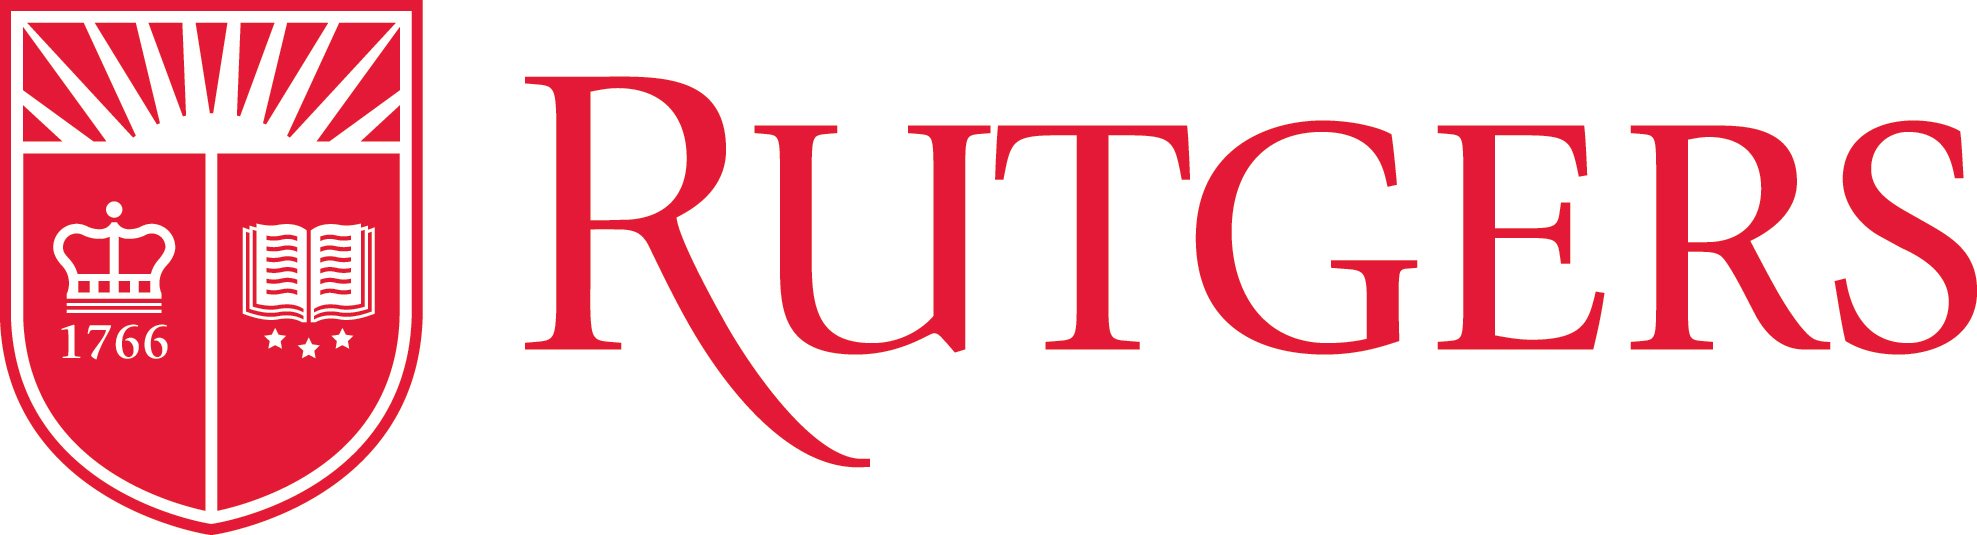 Rutgers Law